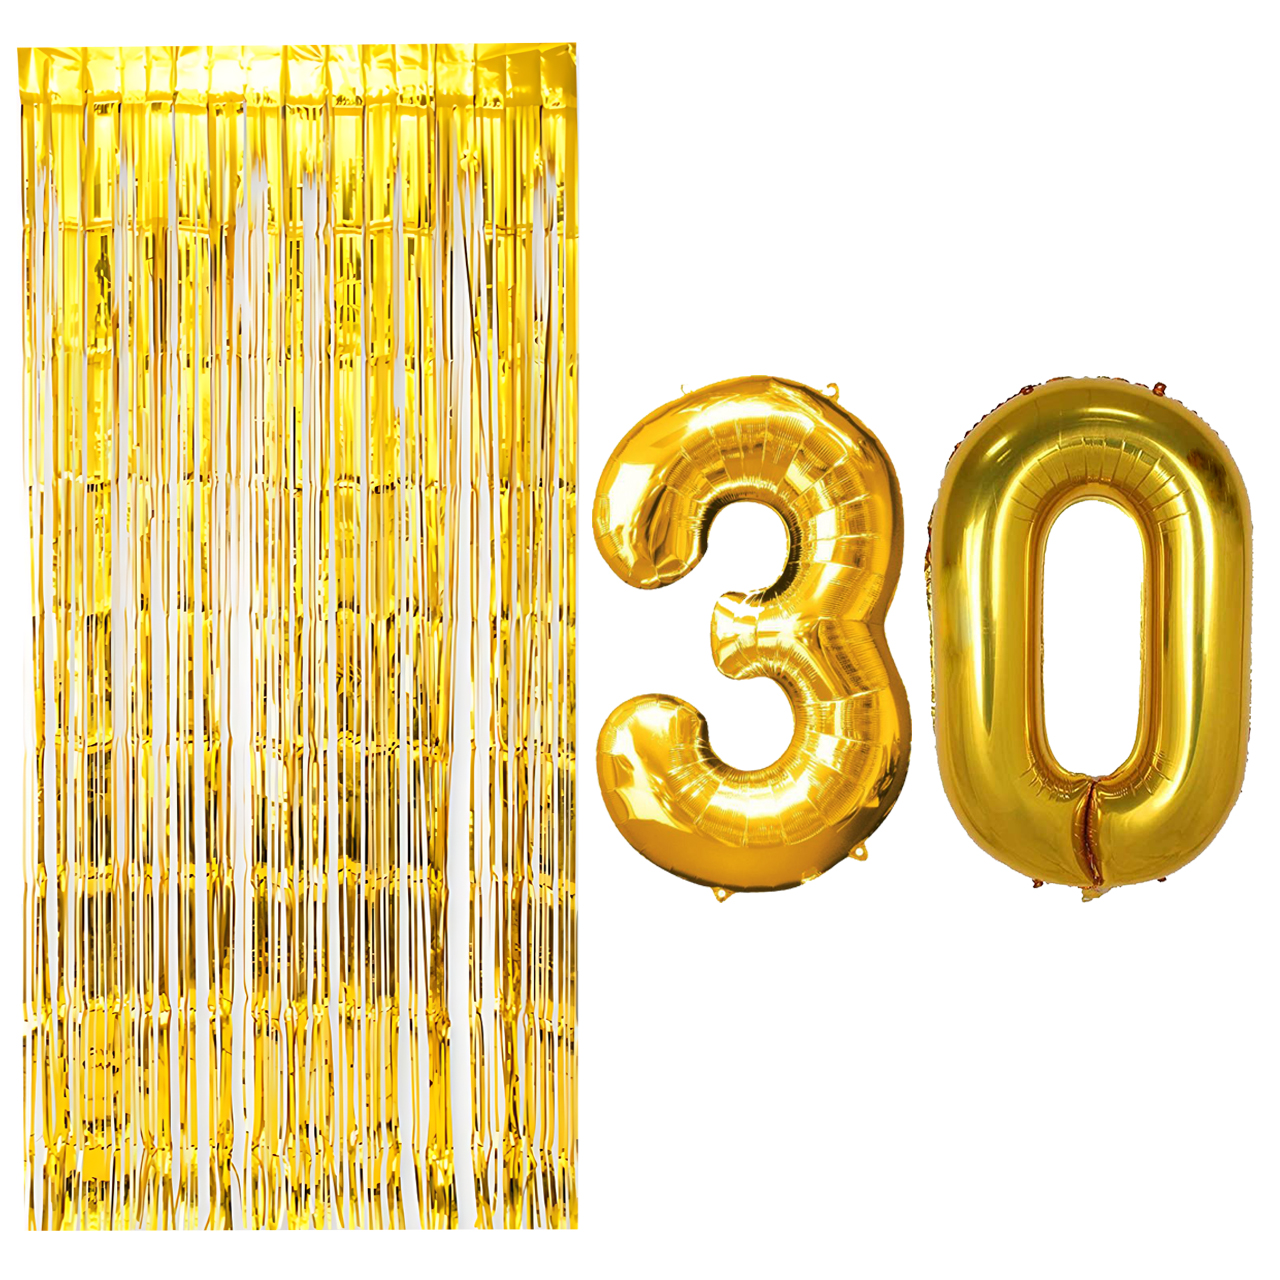 بادکنک فویلی مسترتم طرح عدد 30 به همراه پرده تزئینی بسته 3 عددی